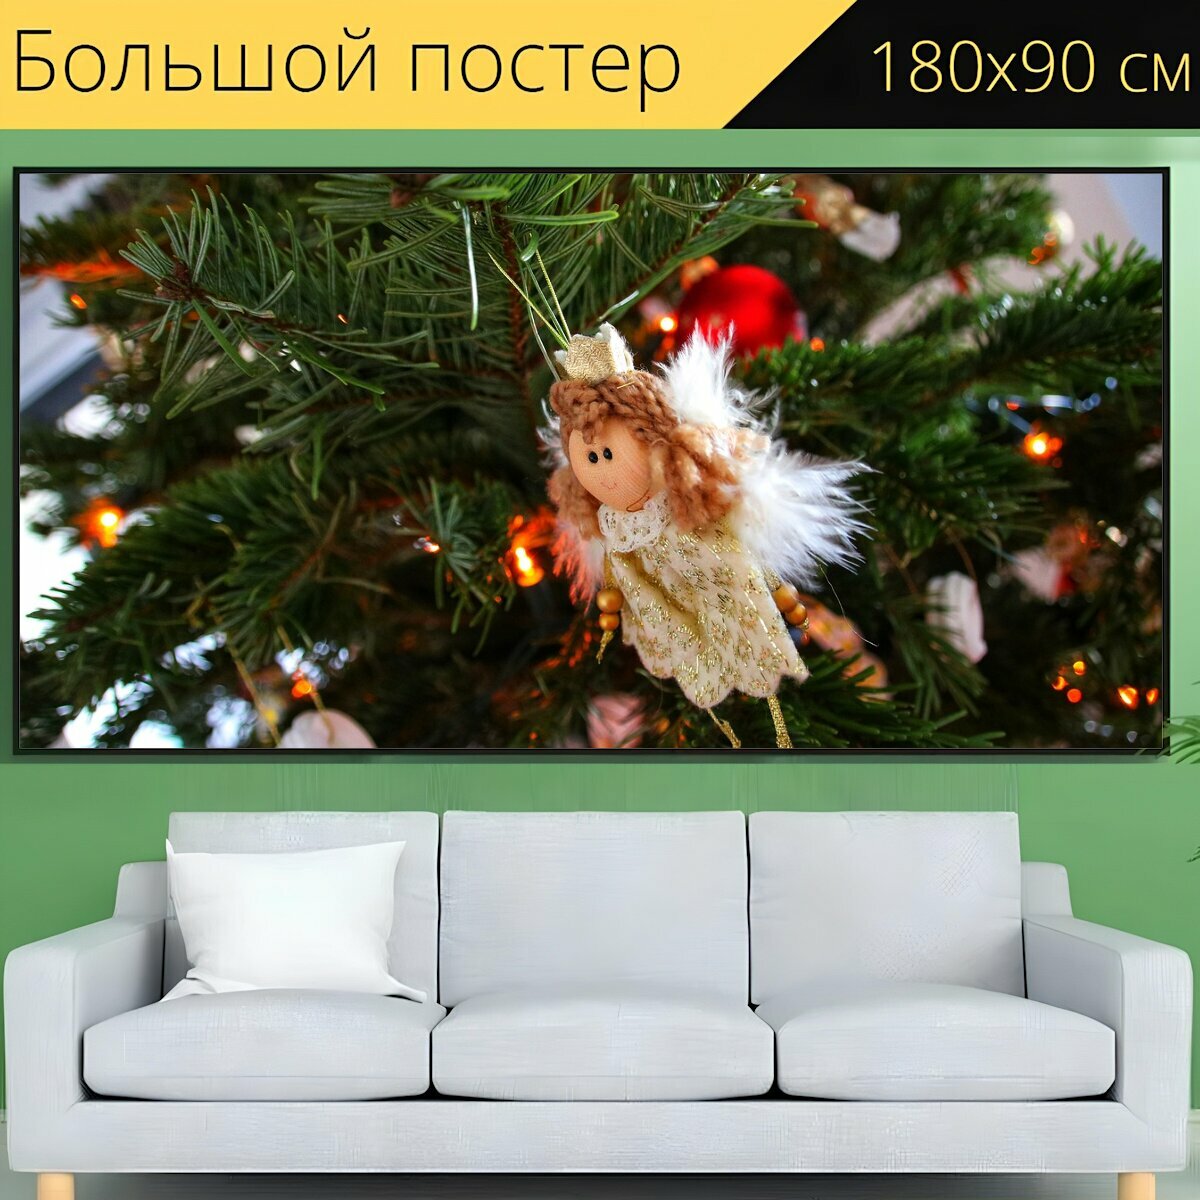 Большой постер "Рождество, ангел, дерево" 180 x 90 см. для интерьера